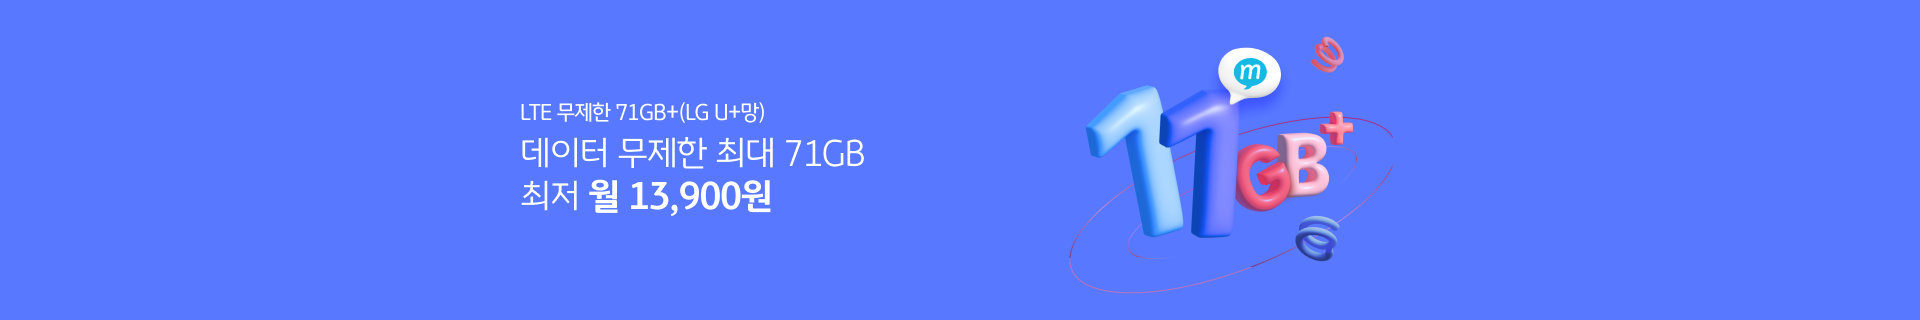 LTE 무제한 11GB+(LG U+망) 데이터 무제한 최대 71GB 최저 월 30,300원